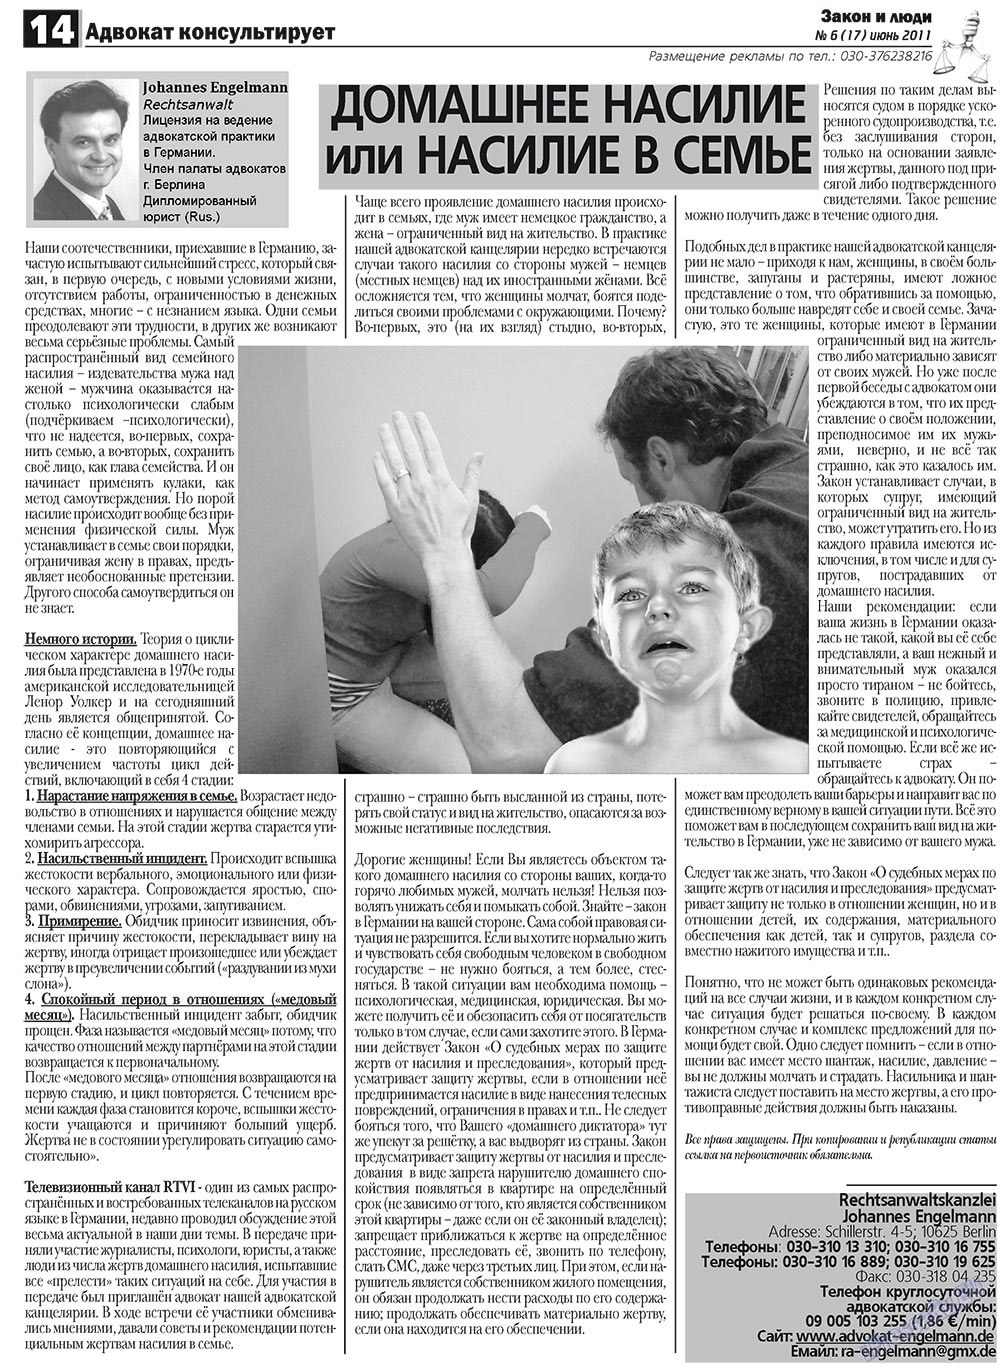 Закон и люди, газета. 2011 №6 стр.14